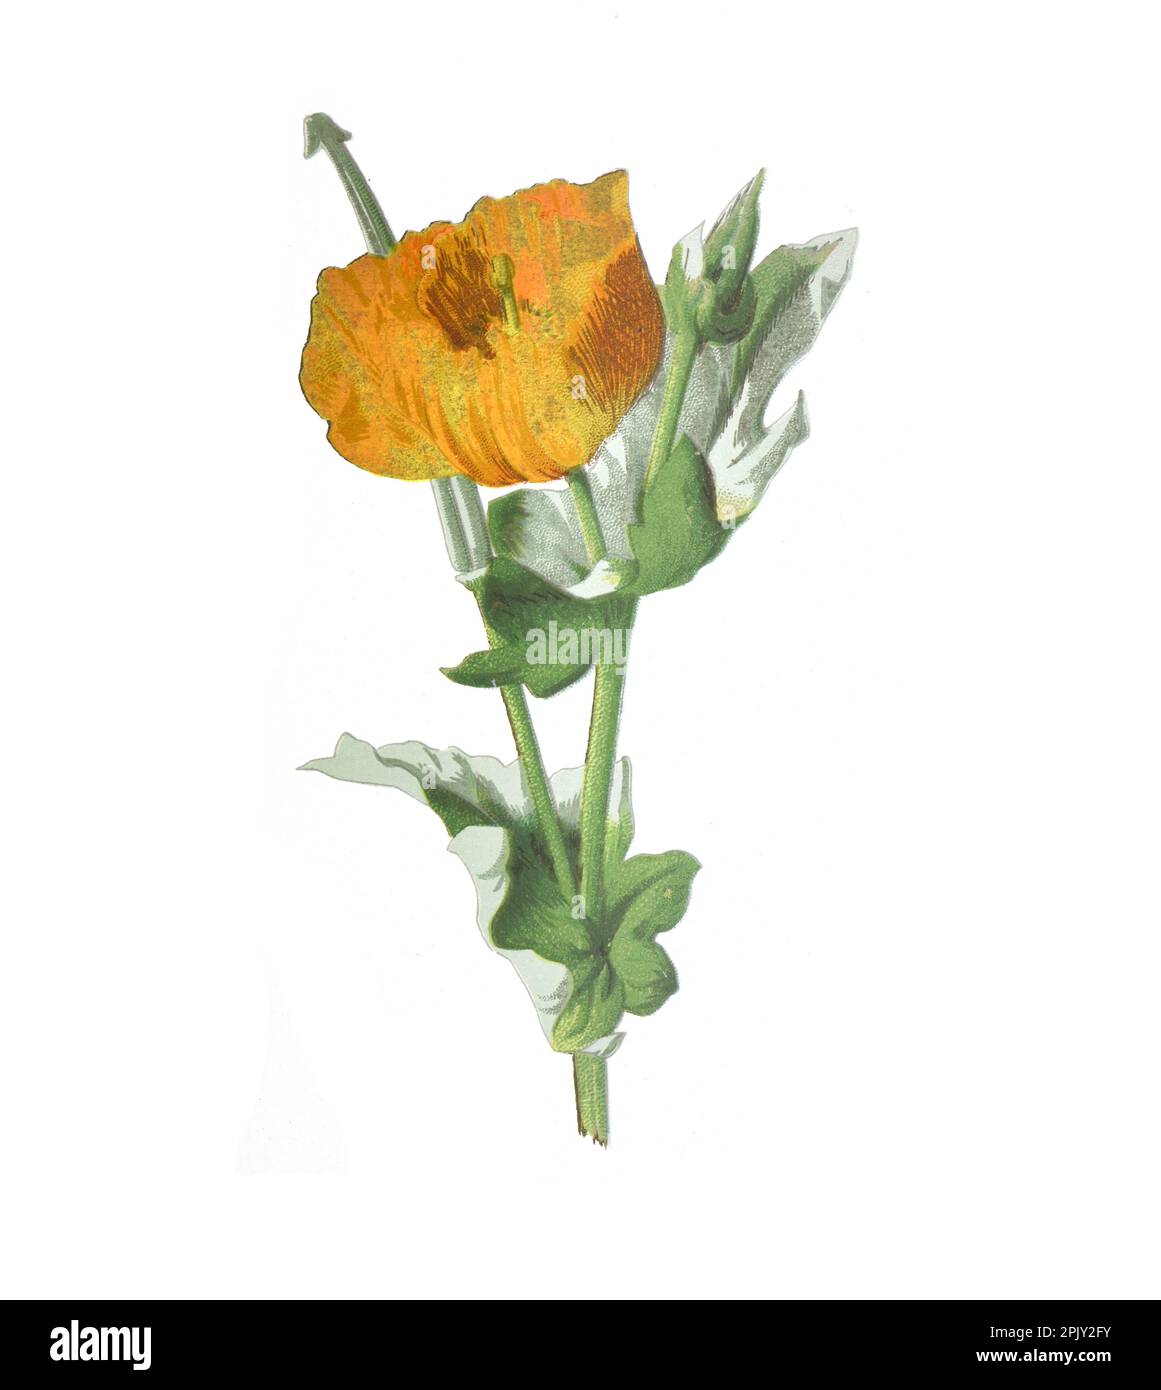 Gelbe Mohnblume mit Hörnern. (Glaucium flavum). Antikes Bild von handgezeichneten Blumen. Vintage und antike Blumen. Wildblumen-Illustration. Stockfoto